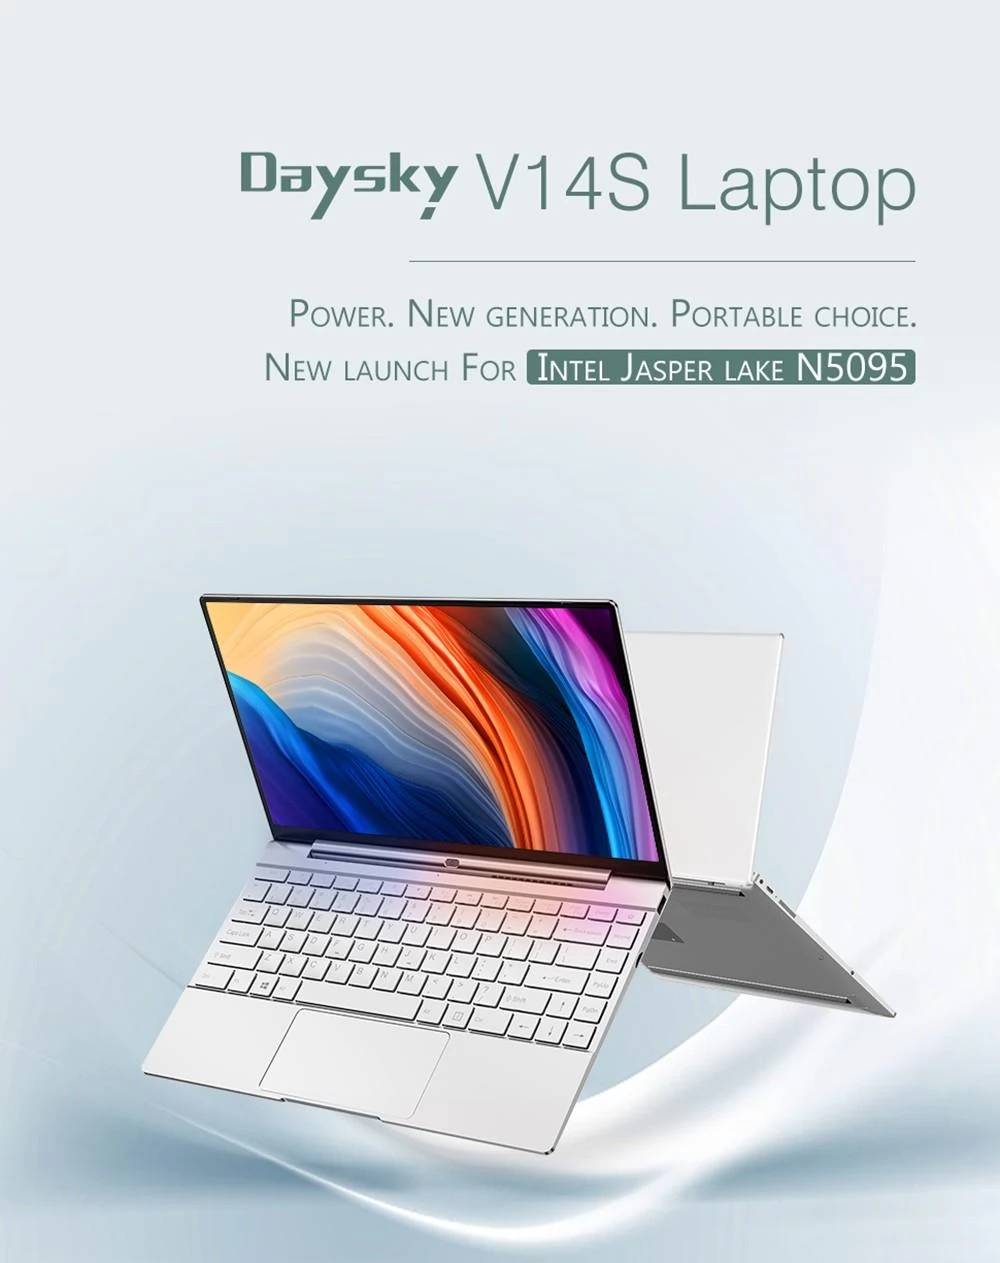 Daysky V14S 14.1 inch Laptop Intel Celeron N5095 12GB LPDDR4 512G SSD 1080P FHD with Backlight Windows 10